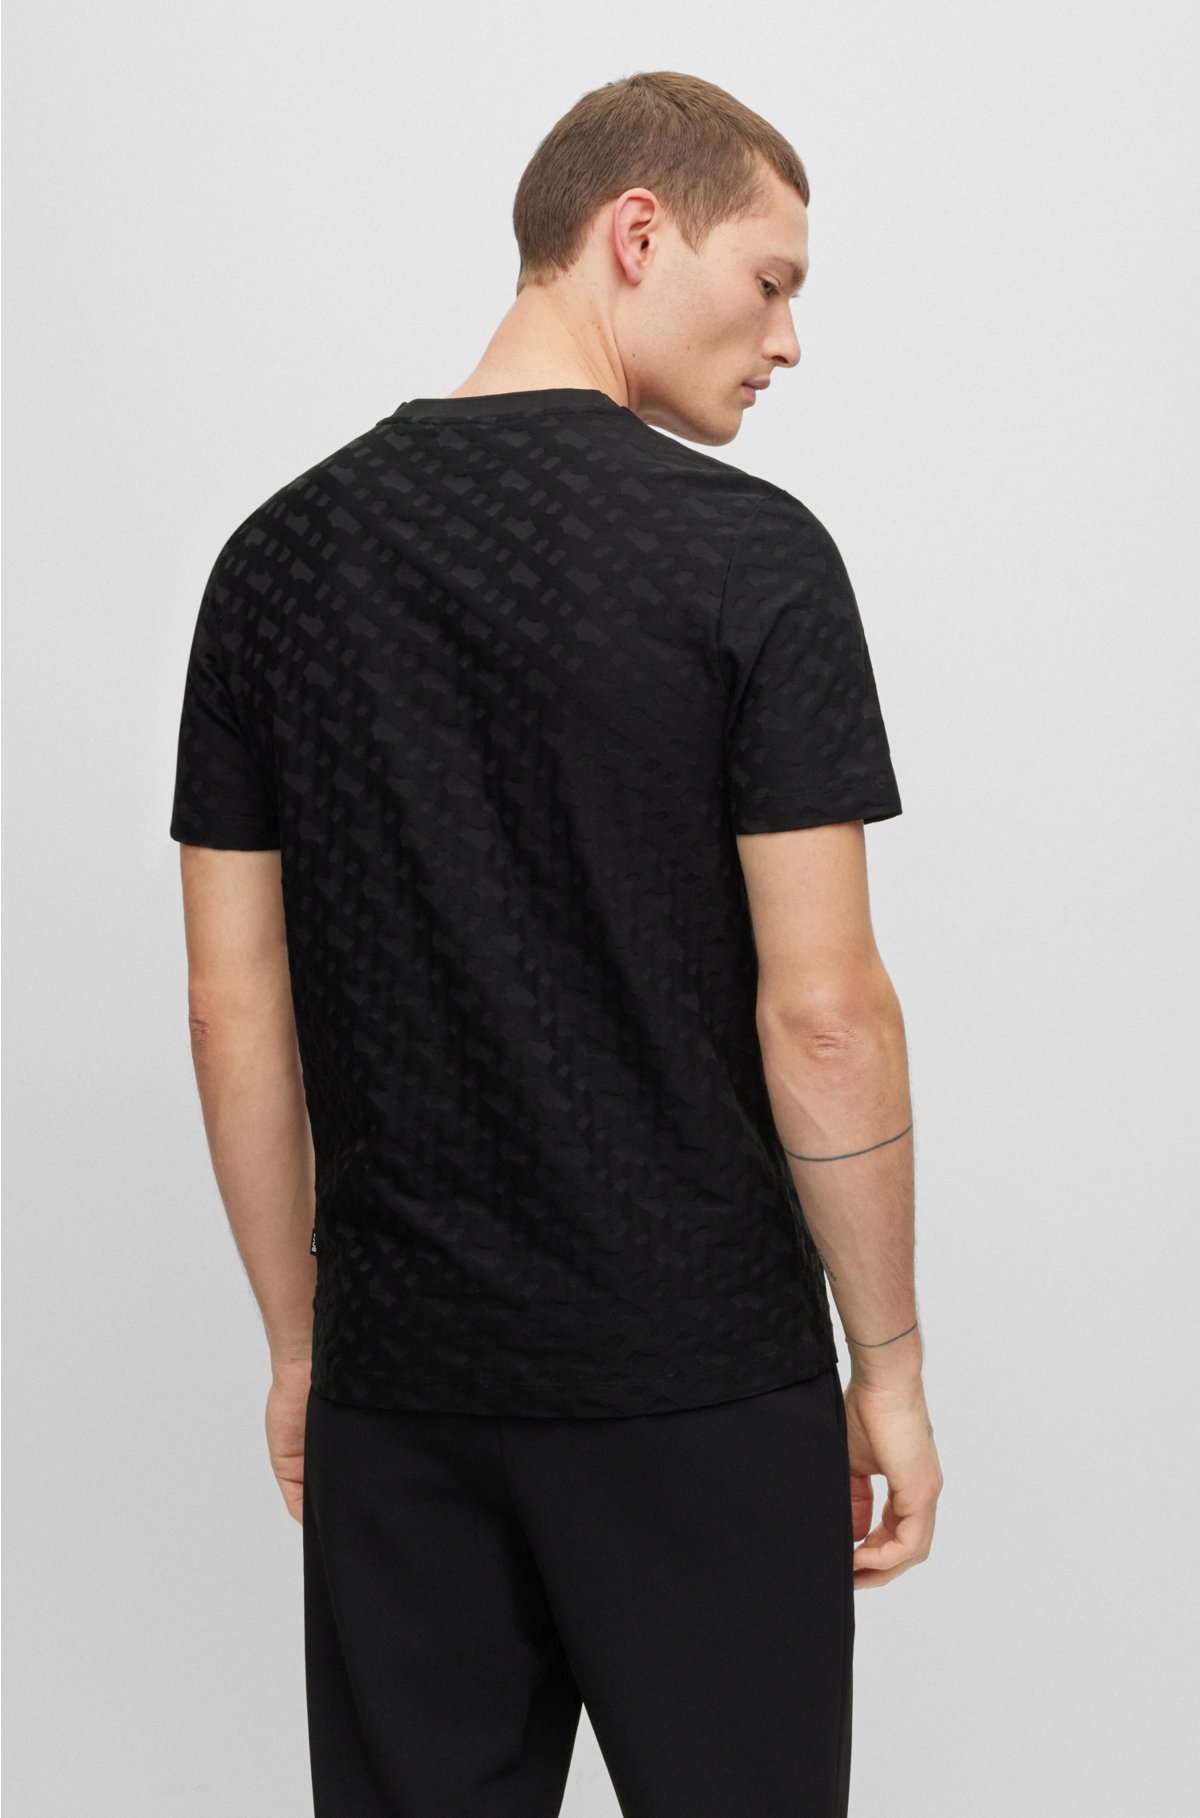 Louis Vuitton Black Men T Shirt Chest Pocket Size M